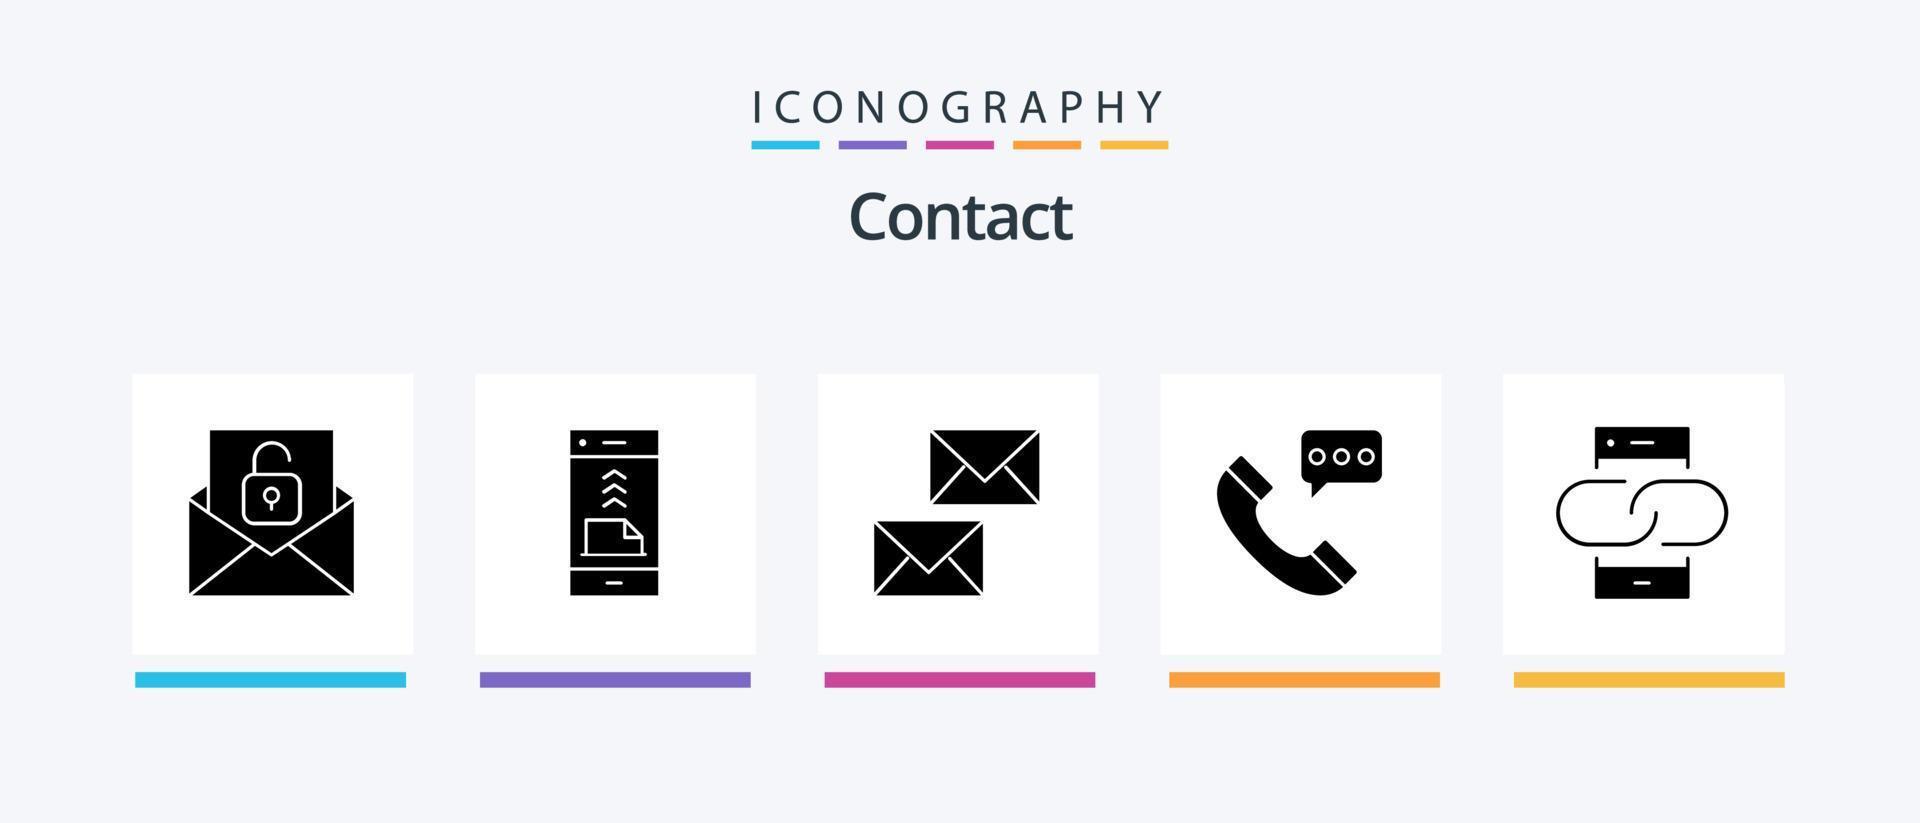 paquete de iconos de glifo 5 de contacto que incluye contacto con nosotros. comunicación. teléfono. llamar. correo electrónico. diseño de iconos creativos vector